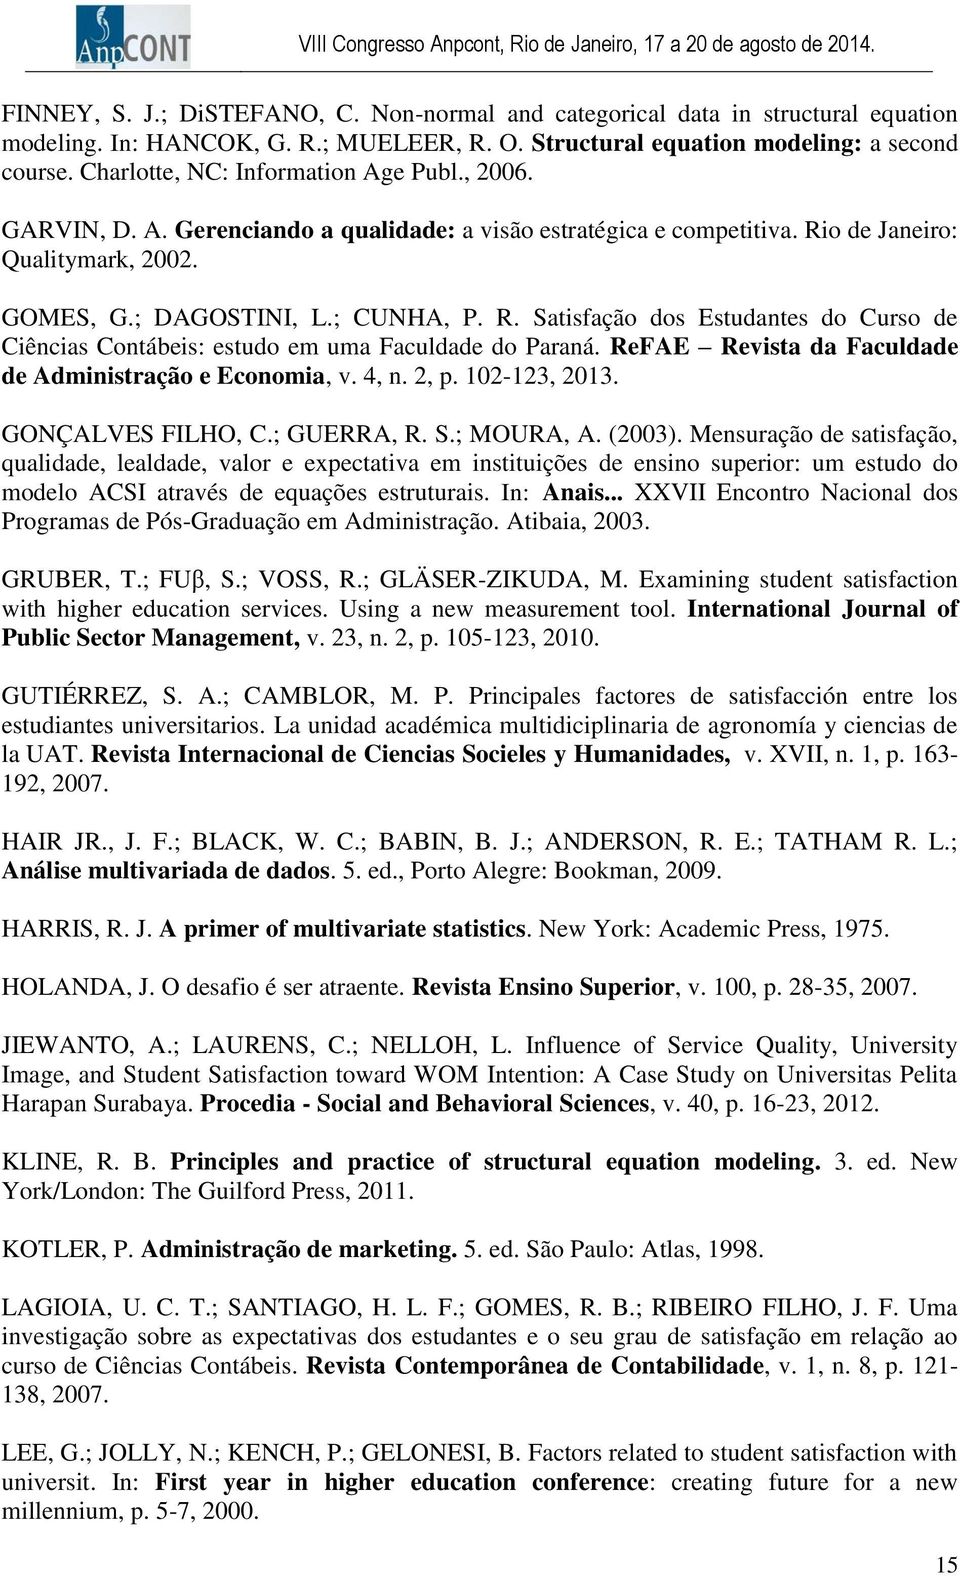 o de Janeiro: Qualitymark, 2002. GOMES, G.; DAGOSTINI, L.; CUNHA, P. R. Satisfação dos Estudantes do Curso de Ciências Contábeis: estudo em uma Faculdade do Paraná.